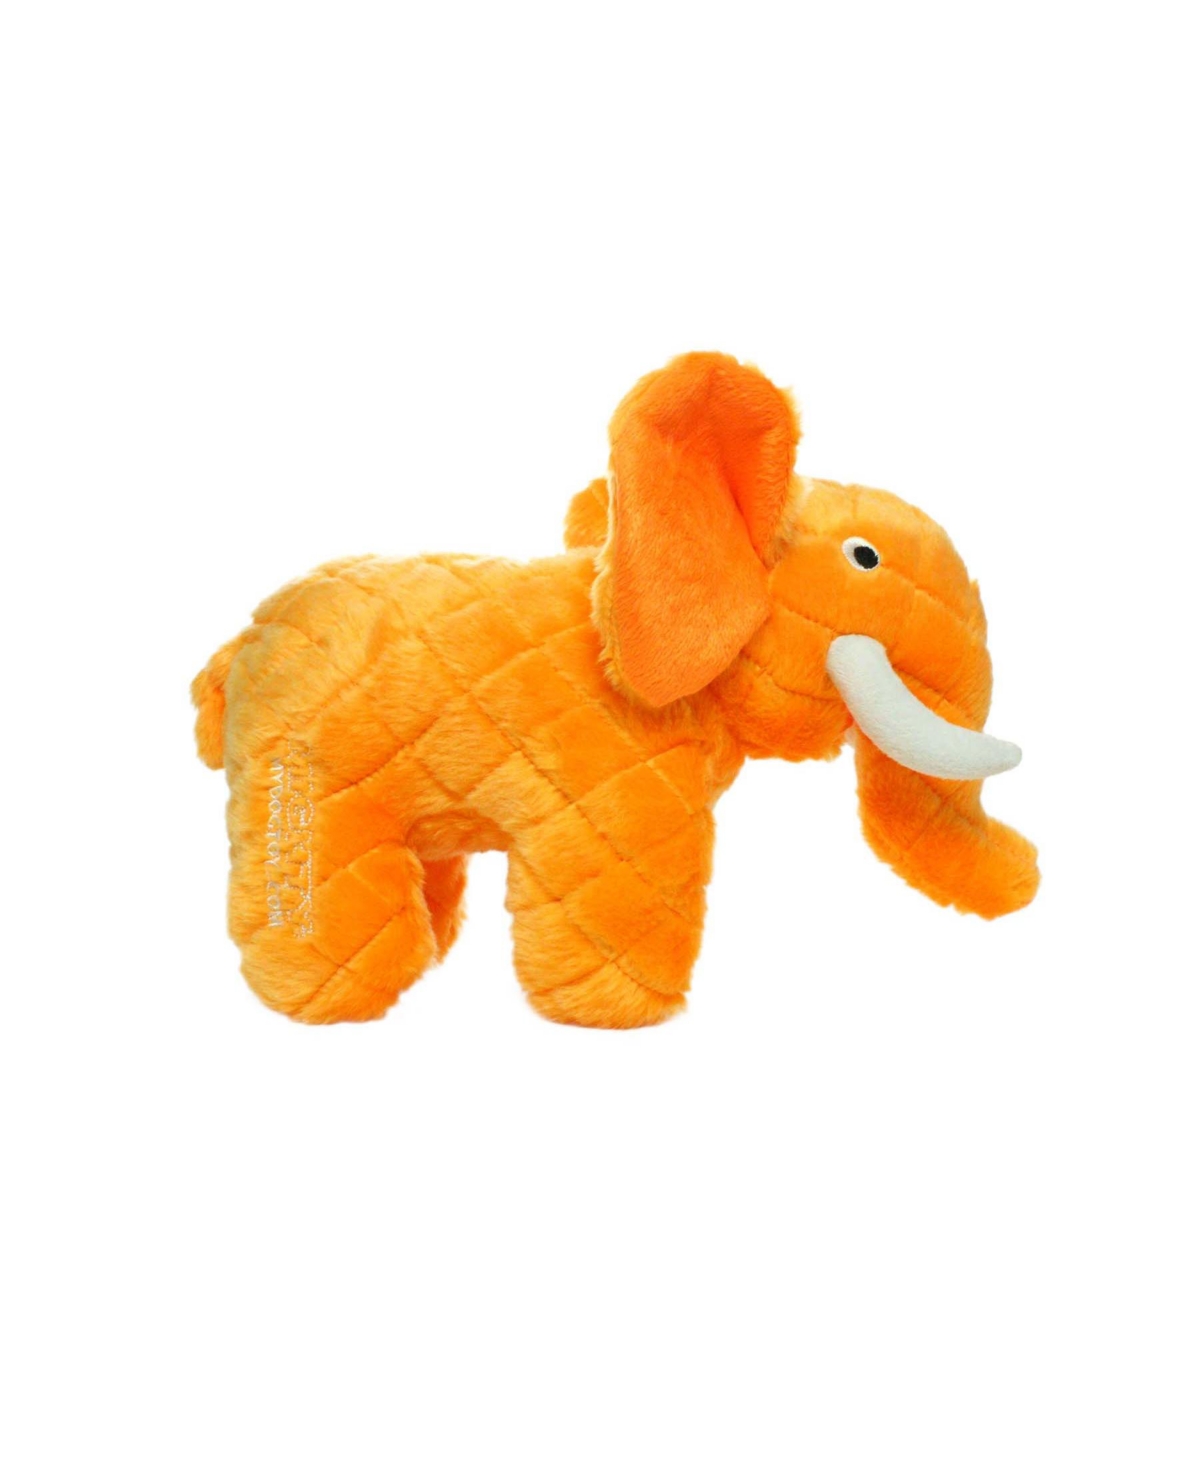 Safari Elephant Orange, Dog Toy - Orange